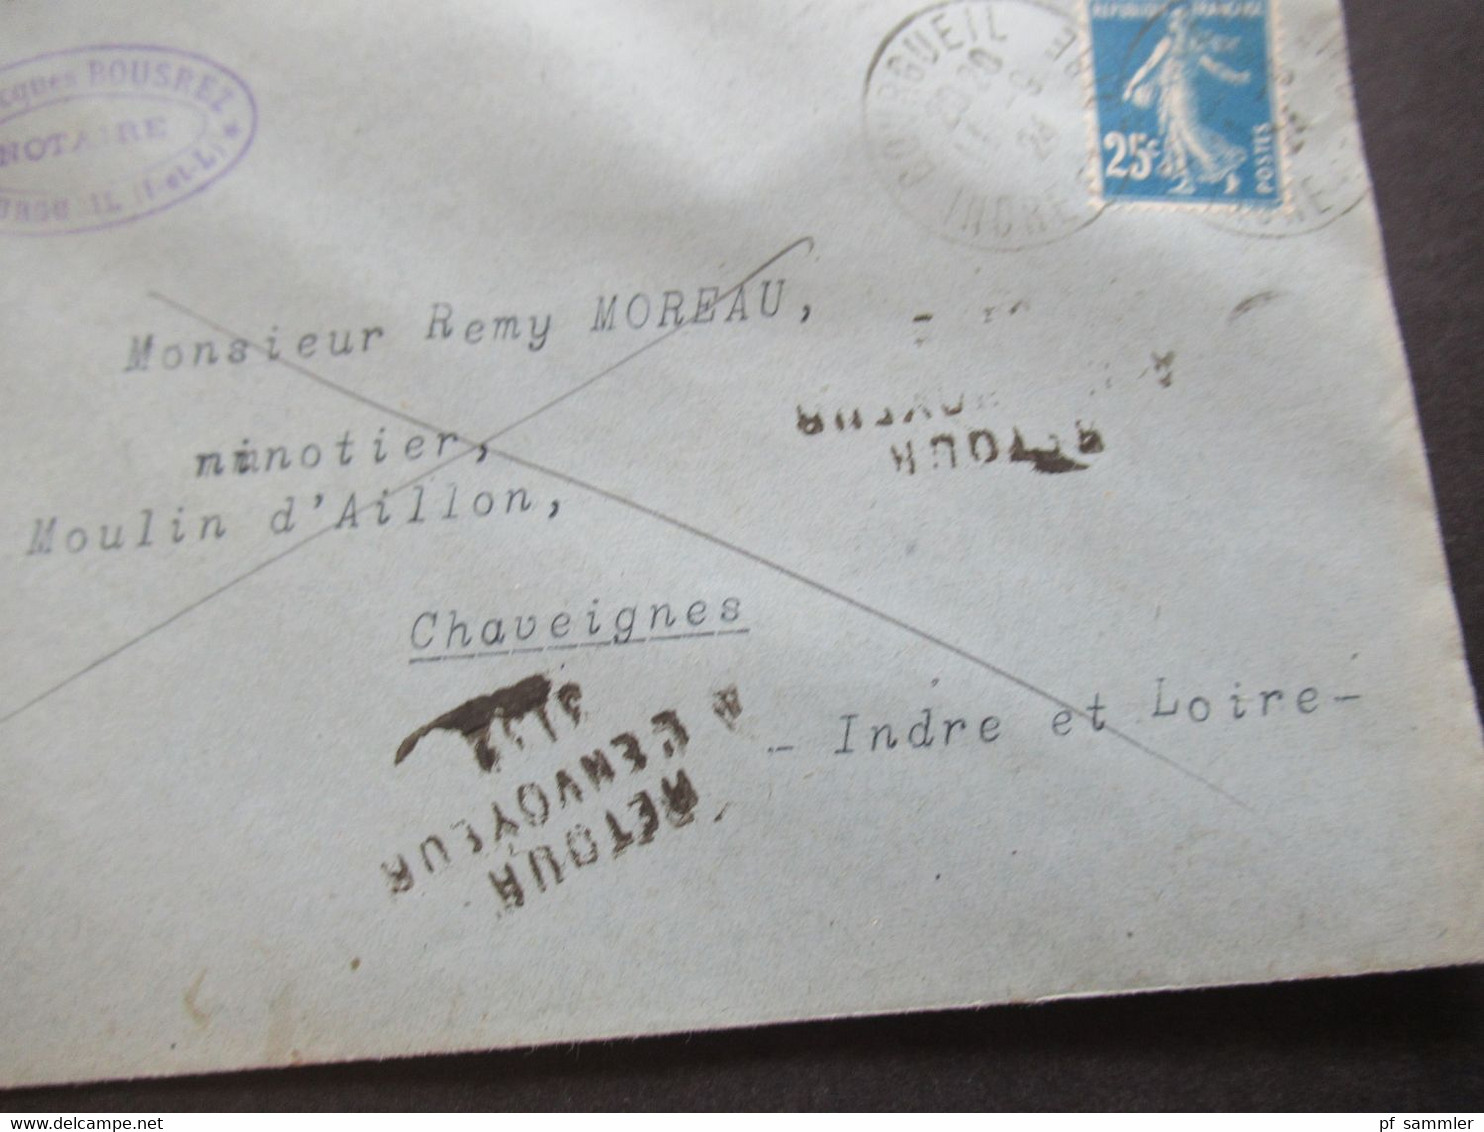 Frankreich 1924 Säerin Retour Beleg 2x Stempel L3 Retour A L'Envoyeur 3152 Brief Notaire In Bourgueil Mit Inhalt! - Covers & Documents